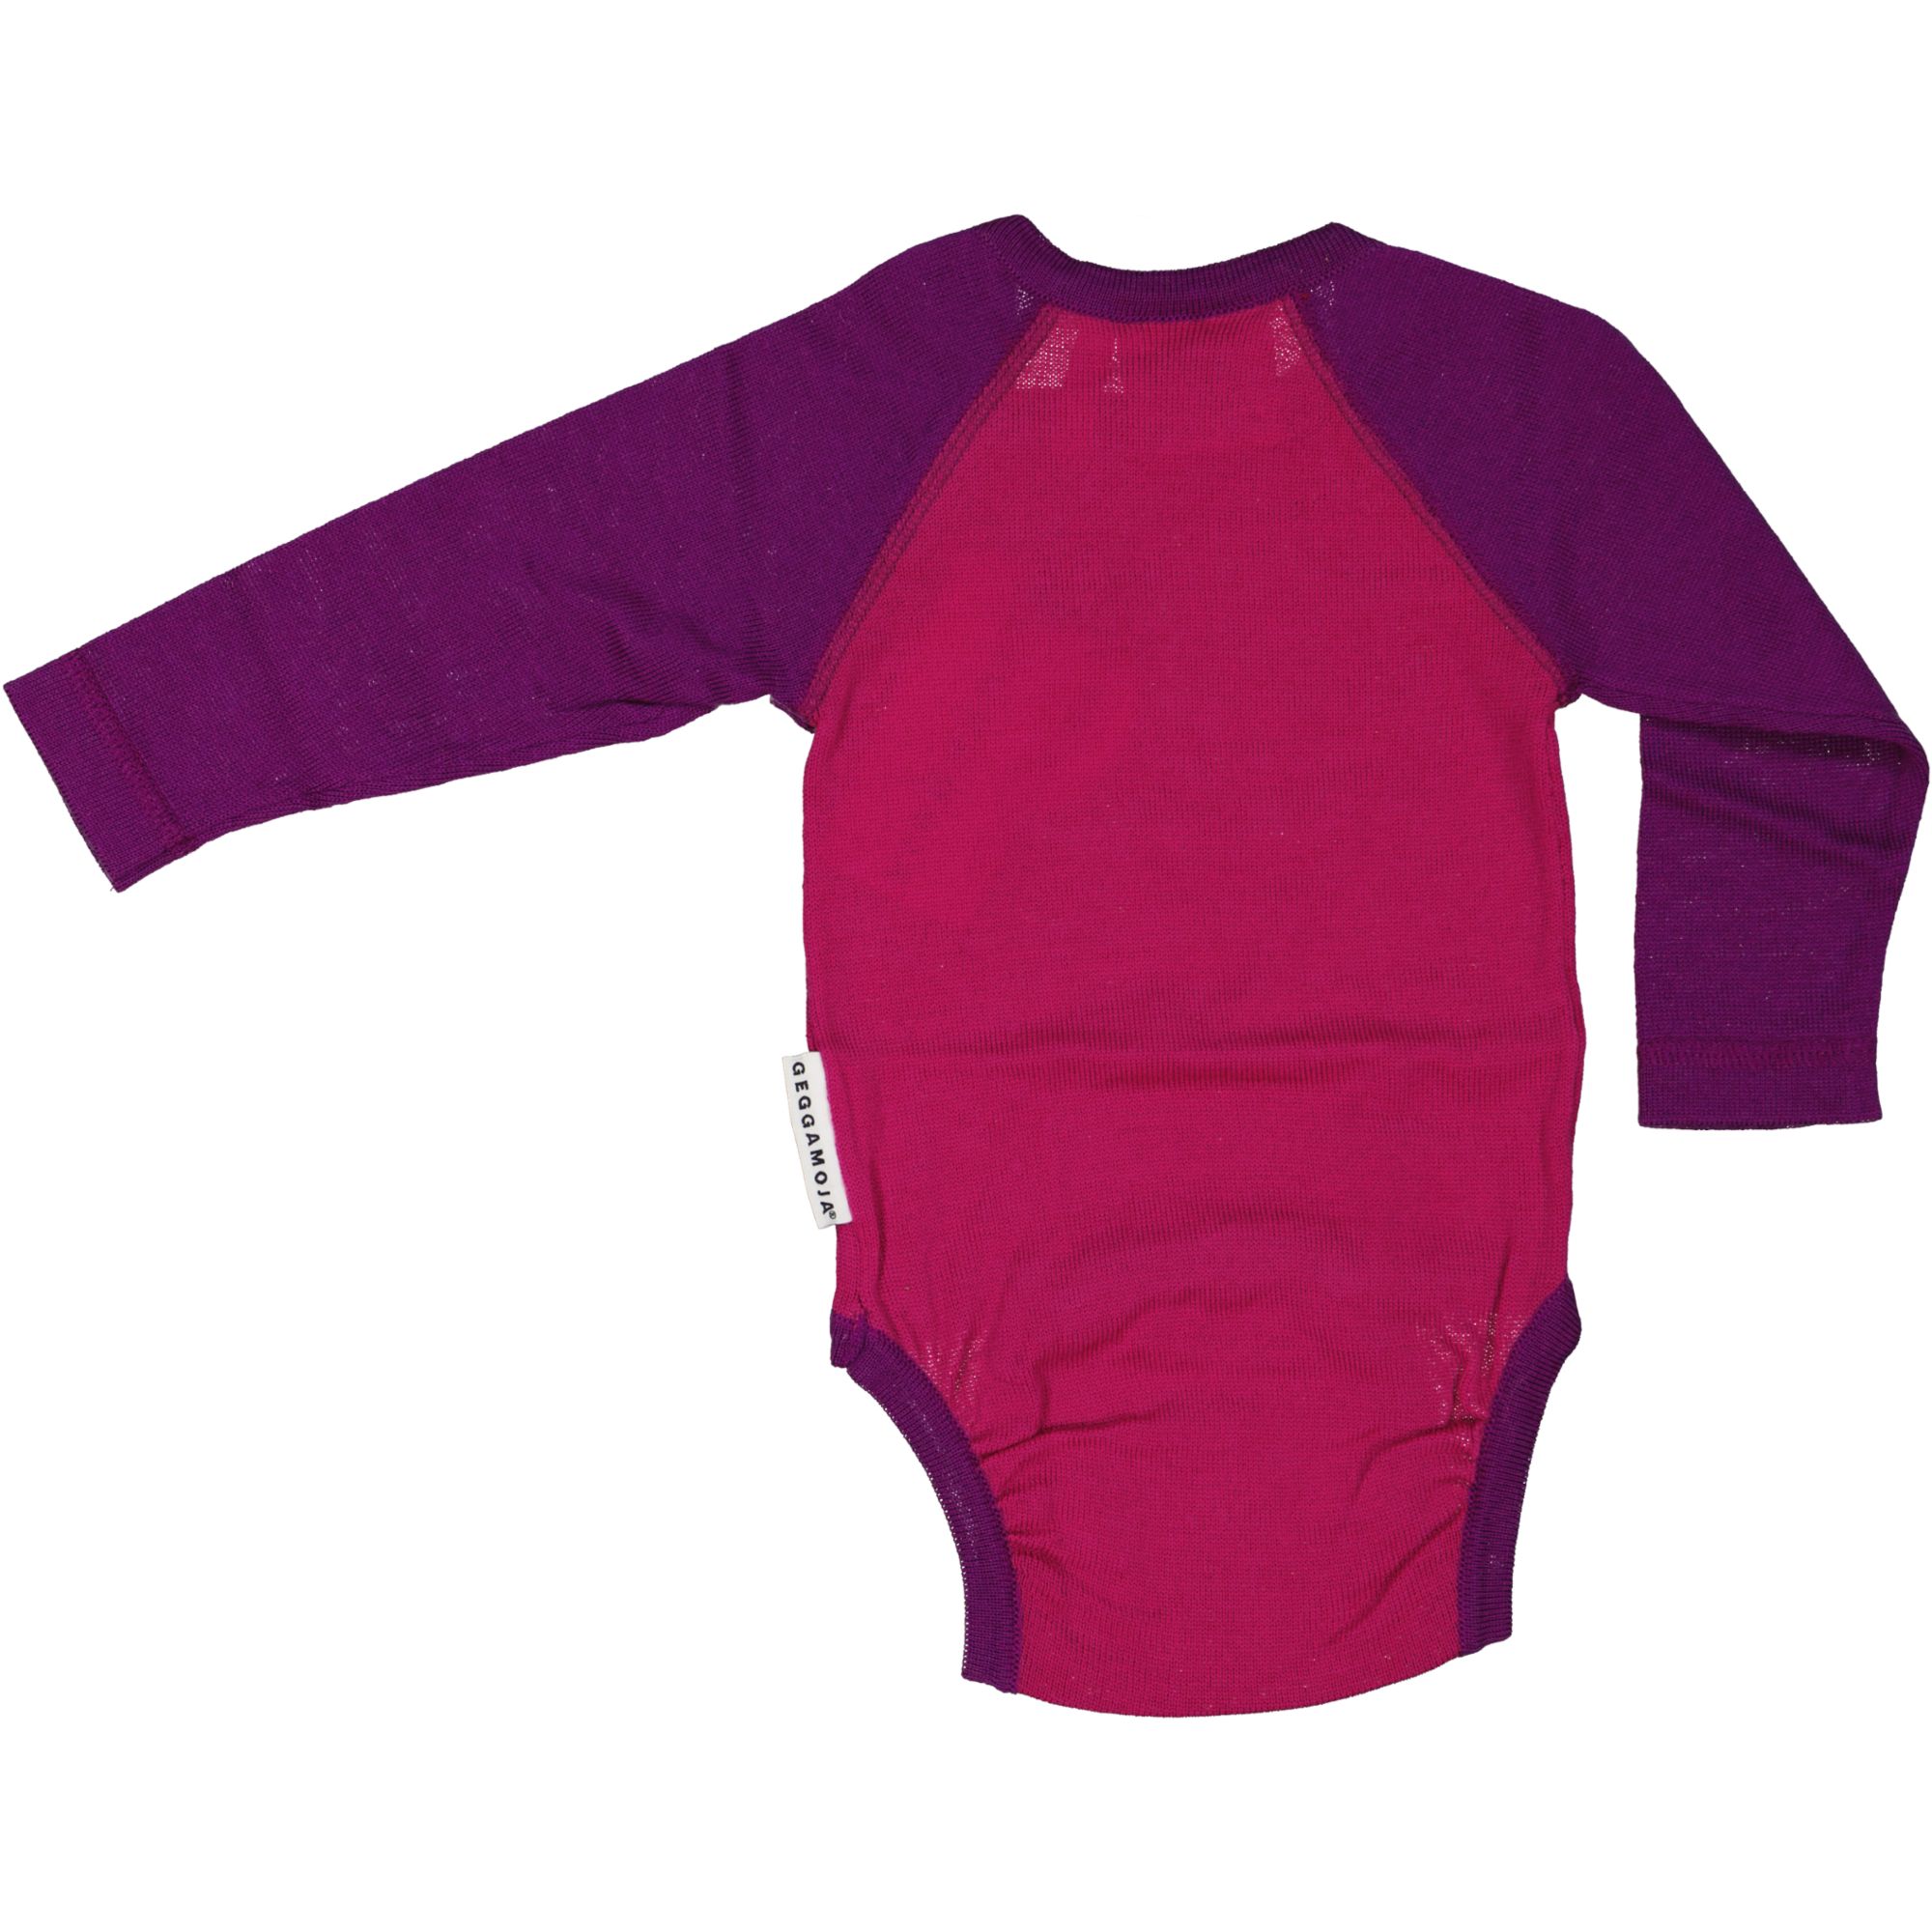 Merino wool body Purplepink 50